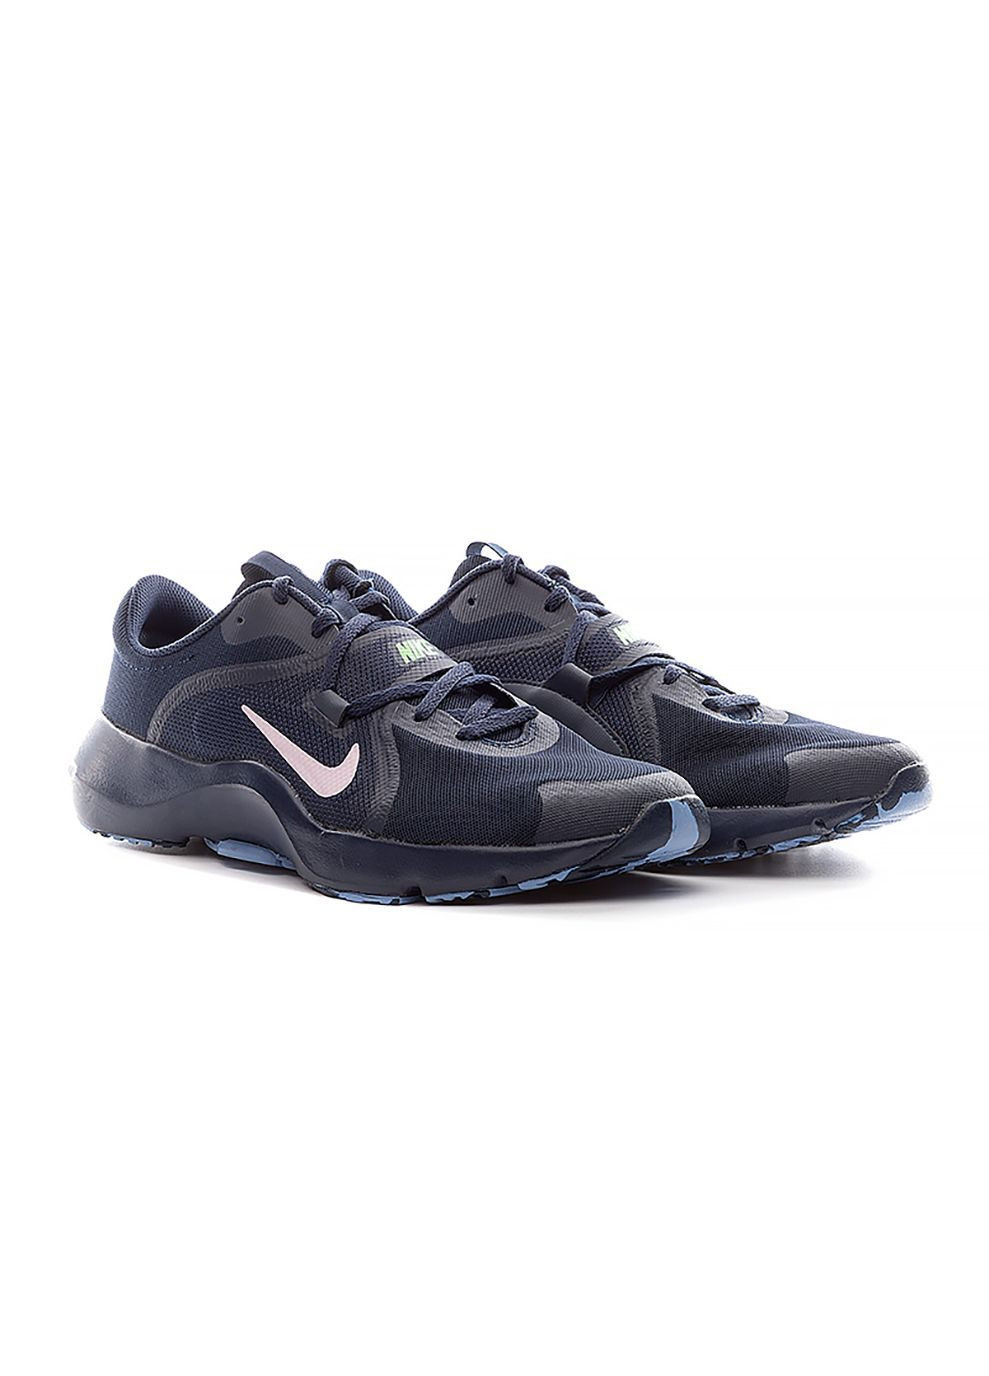 Темно-синие демисезонные мужские кроссовки in-season tr темно-синий Nike